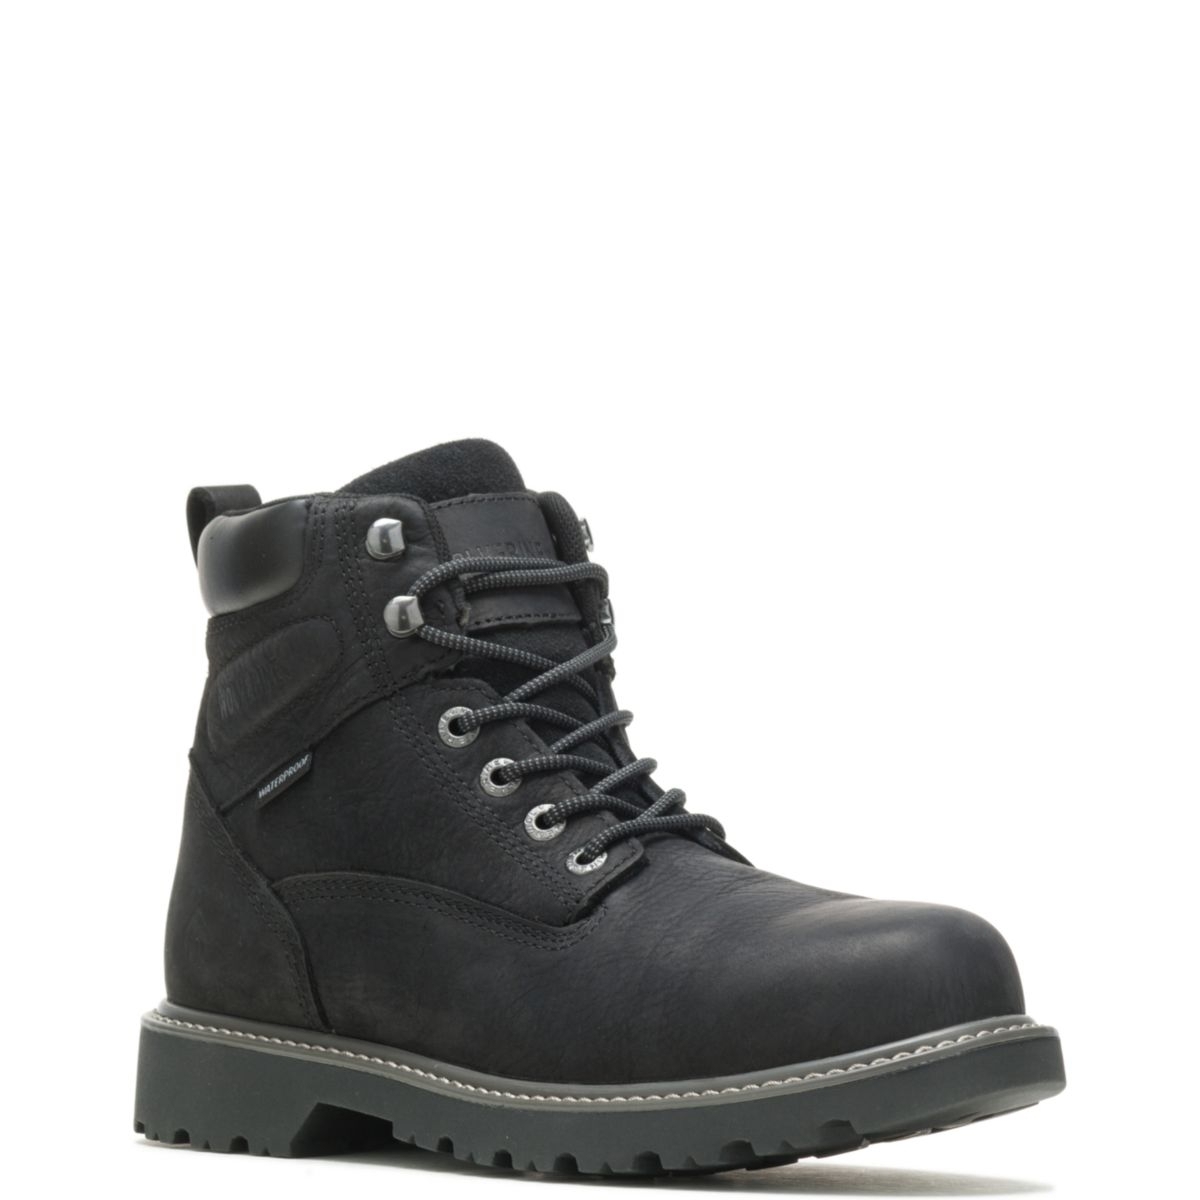 WOLVERINE Men's Floorhand 6 Waterproof Steel Toe Work Boot Black - W10694 BLACK - BLACK, 12